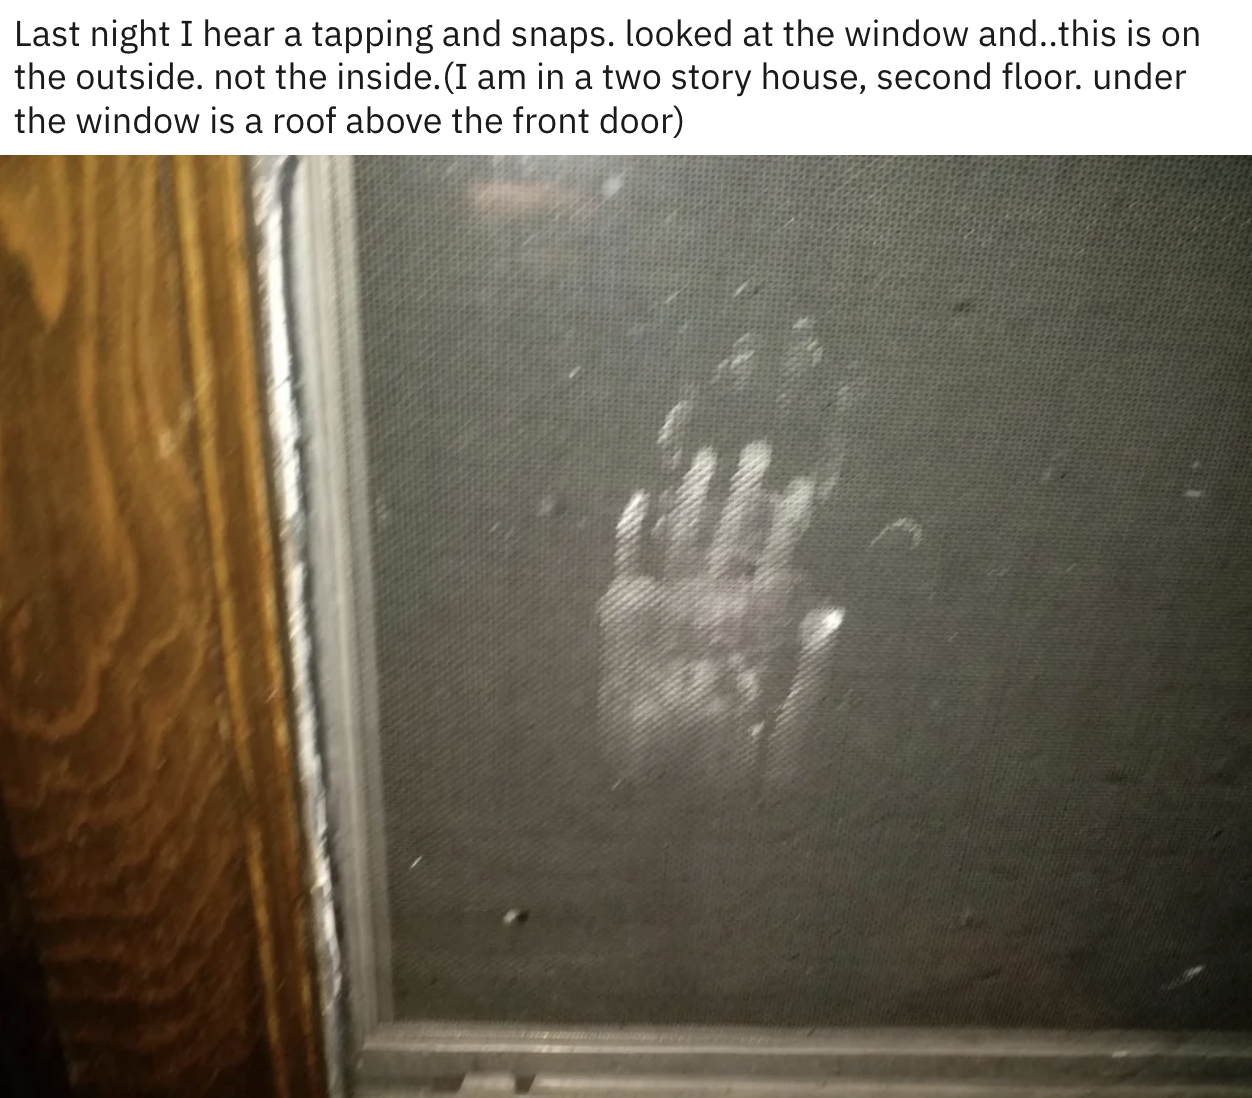 A handprint on a window screen